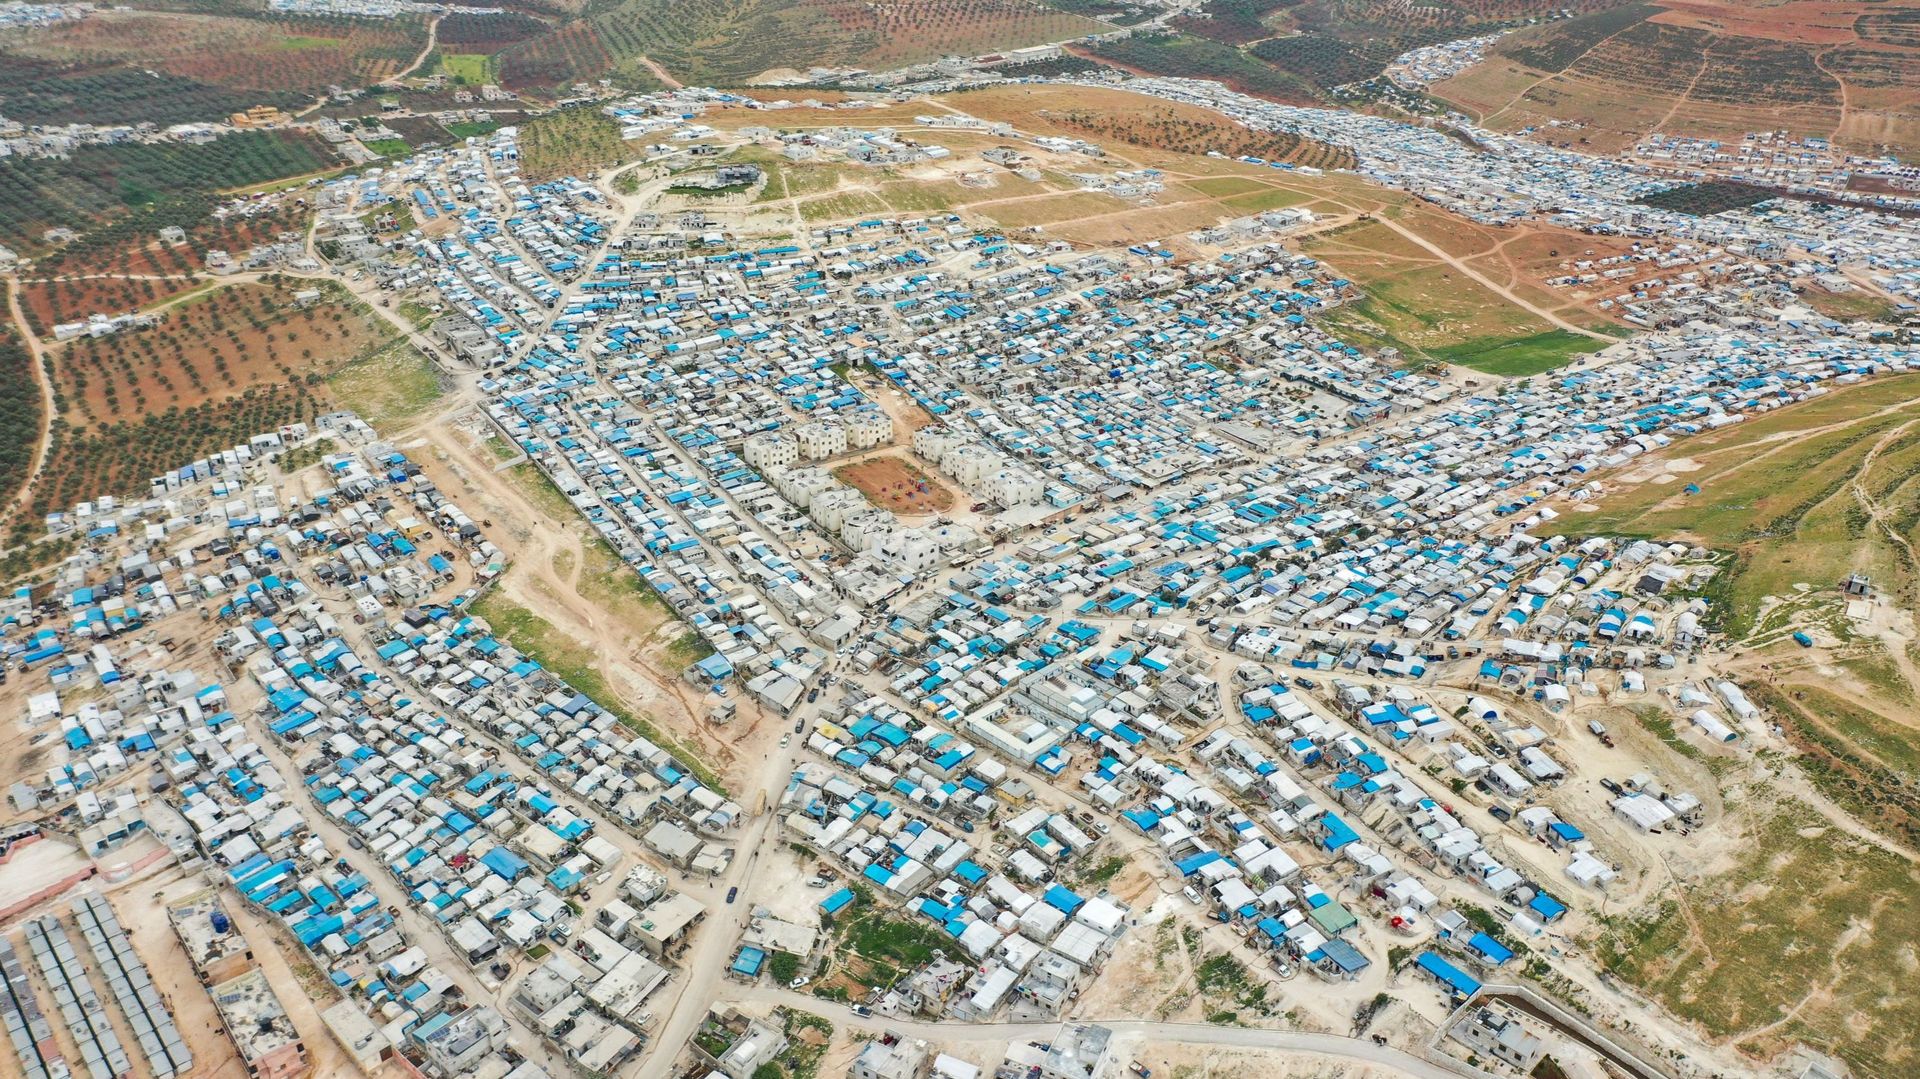 Une image de drone prise le 21 avril 2020 montre une vue générale du camp de personnes déplacées près de Kah, dans le nord de la province d’Idlib, près de la frontière avec la Turquie.